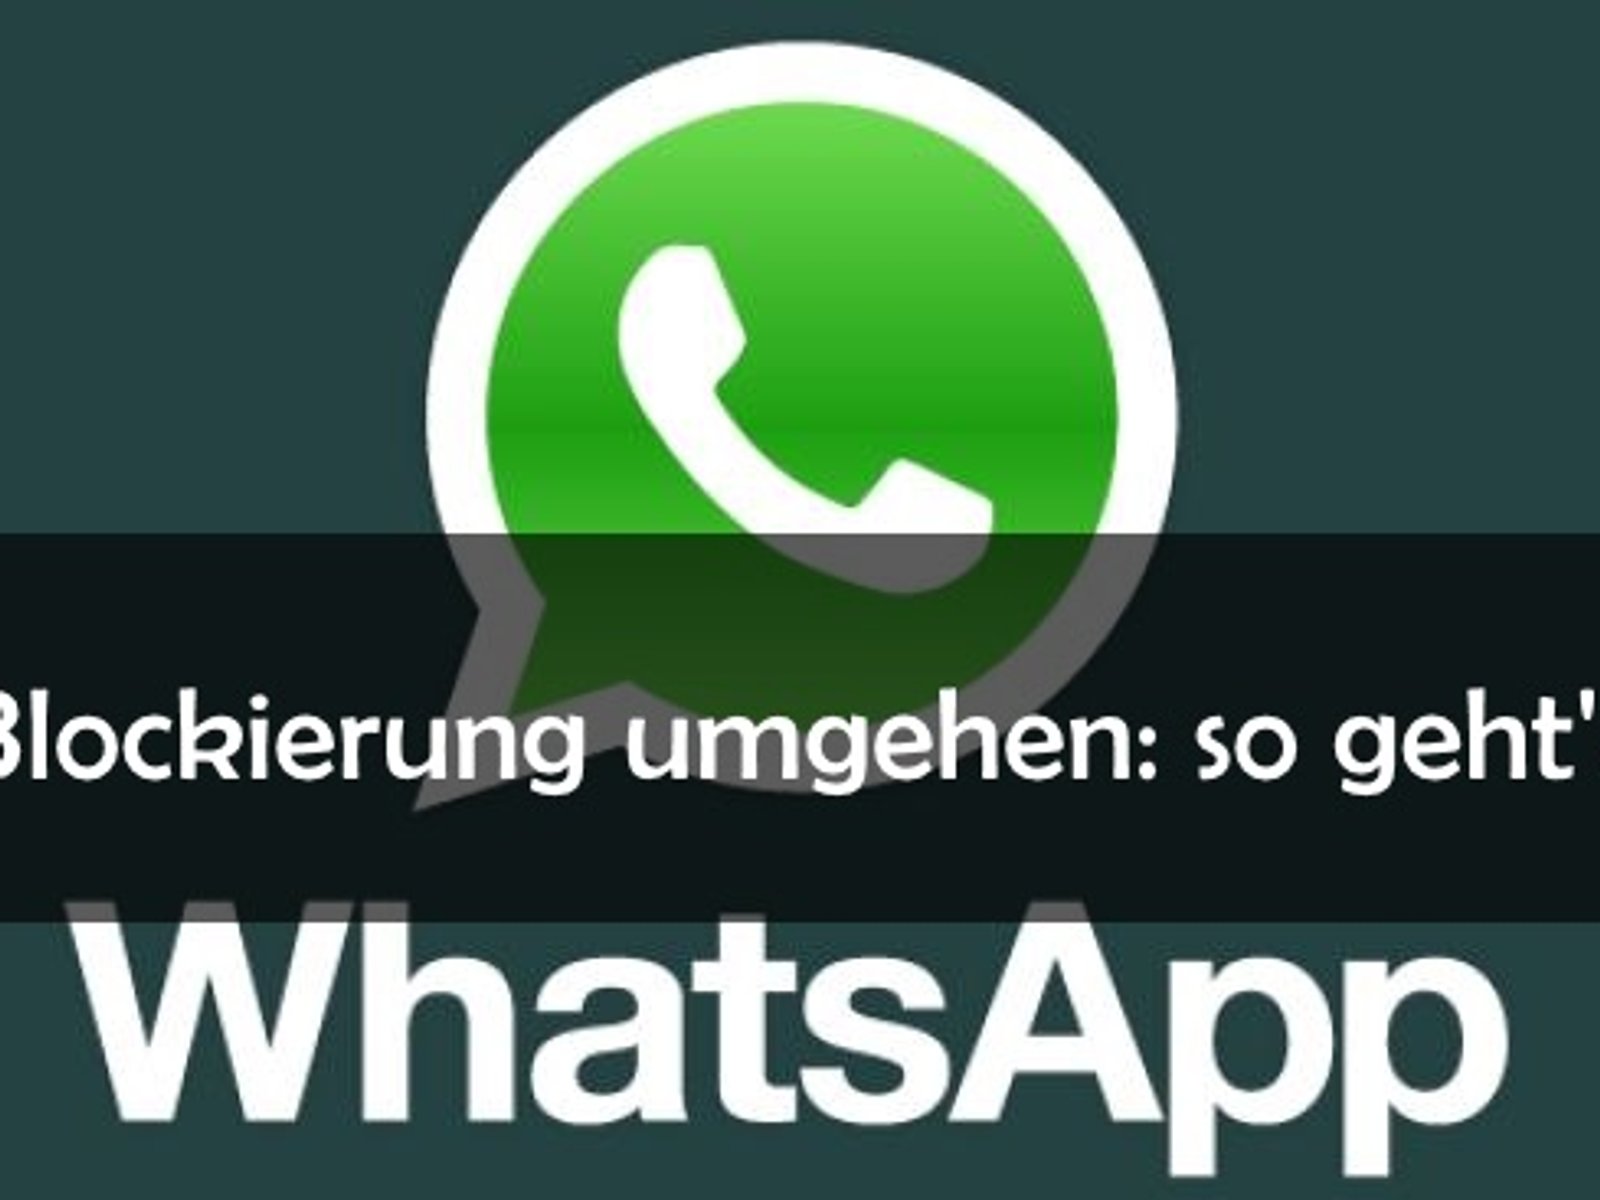 Whatsapp blockierung umgehen ohne nummer ändern